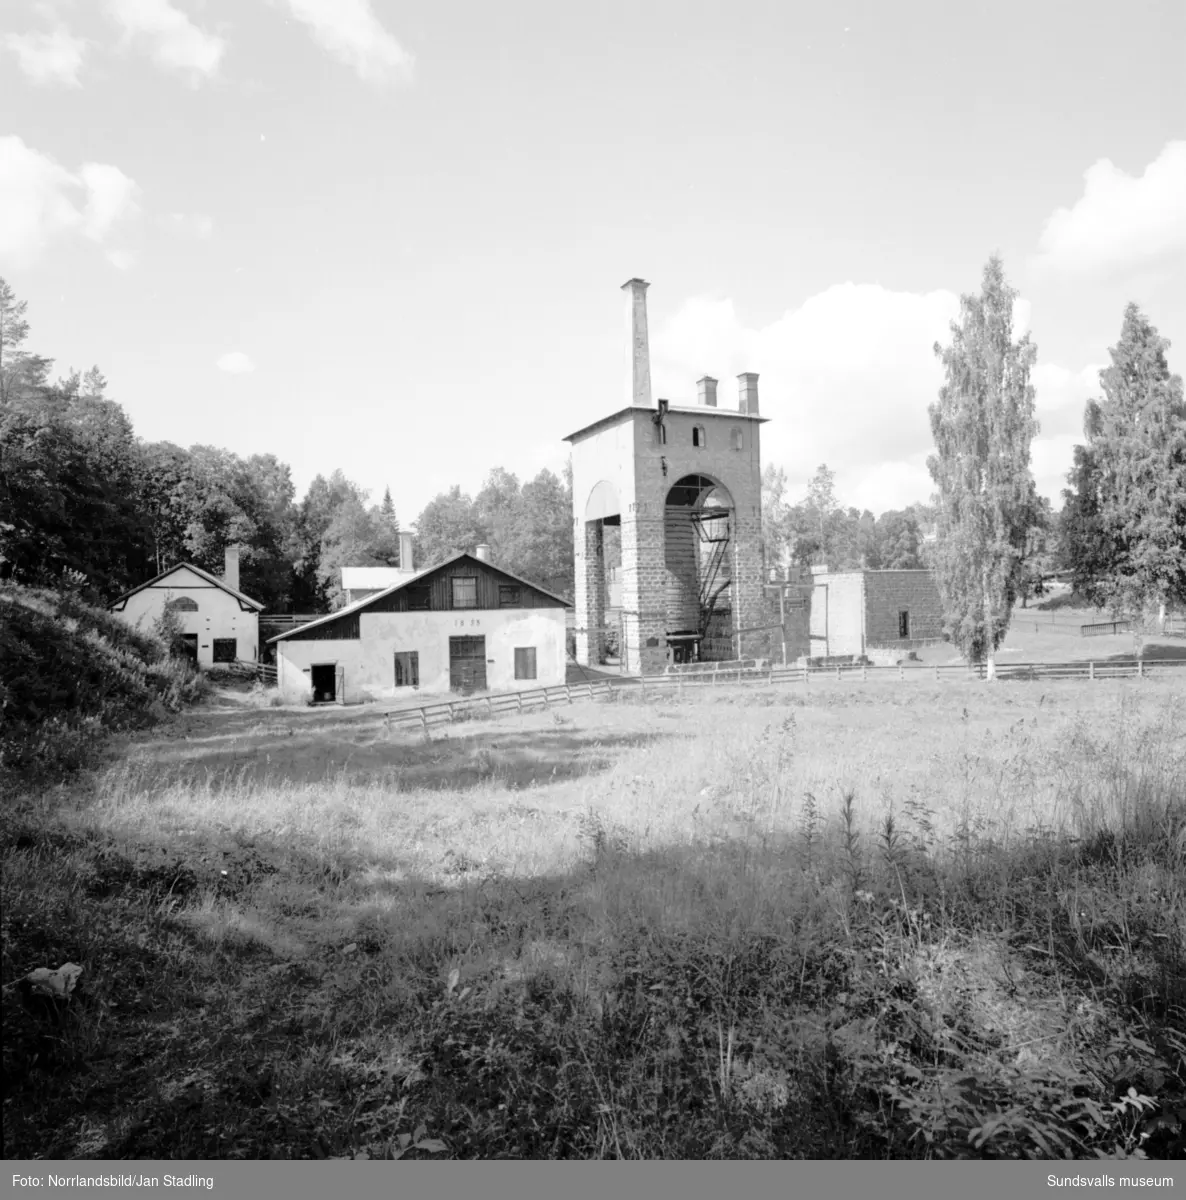 Exteriörbilder på Galtströms bruk i Njurunda. Galtströms bruk var verksamt från 1672 till 1918.